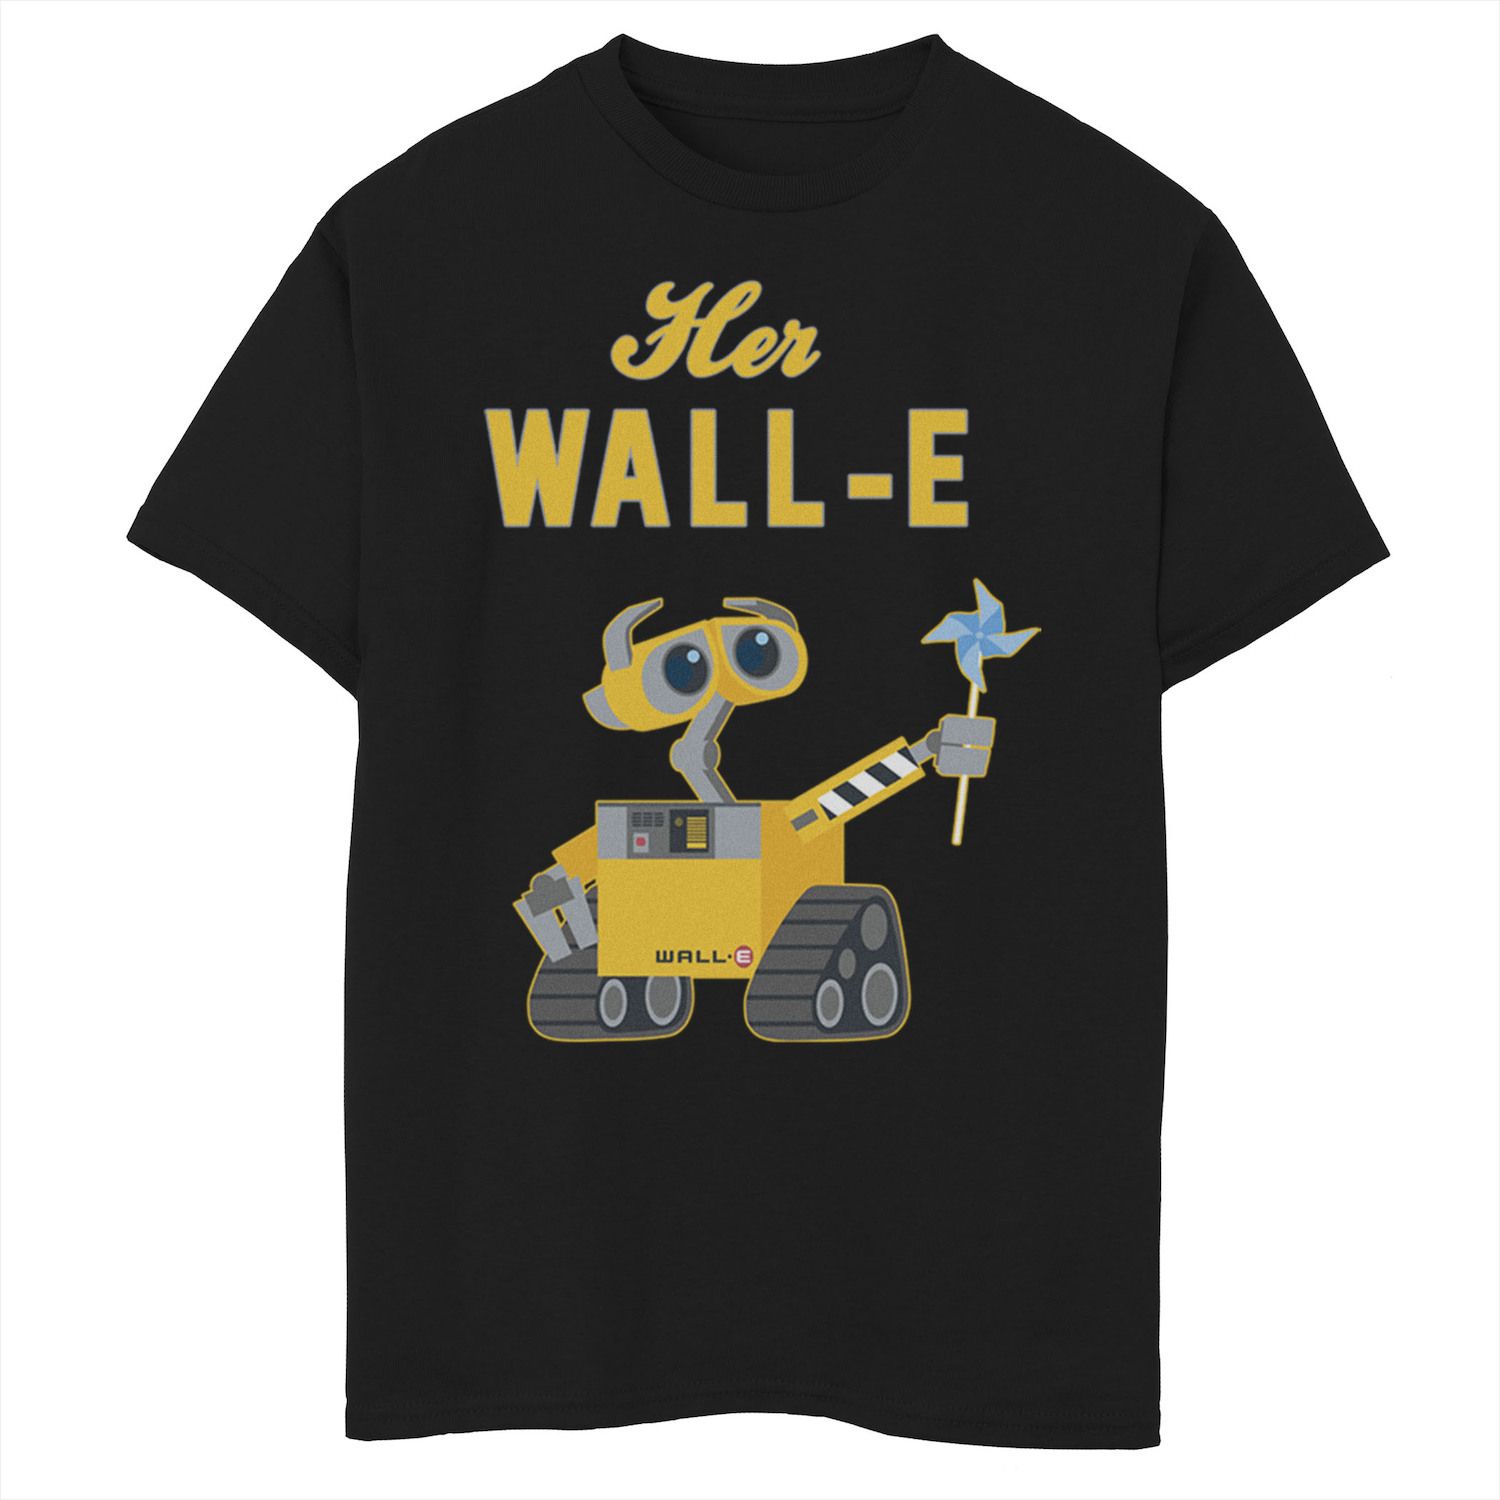 Футболка Wall-E Her Wall-E для мальчиков 8–20 лет Disney/Pixar Disney / Pixar